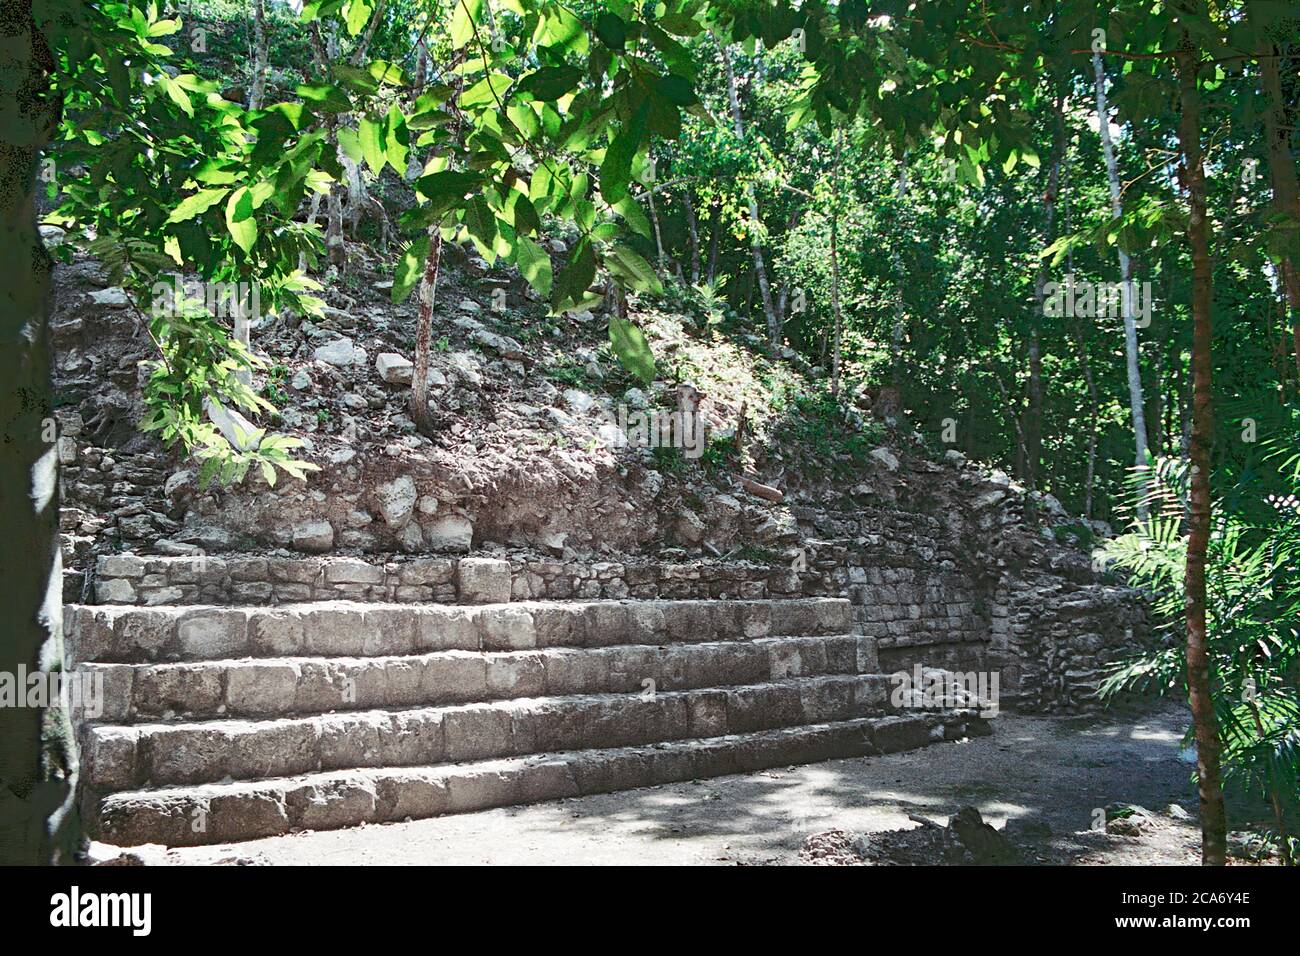 Schritte an der Basis einer Pyramide, wo wenig Rekonstruktion oder Exploration stattgefunden hat. Balamku Maya Ruinen. Campeche, Mexiko. Vintage Film Bild - ca. 1990. Stockfoto